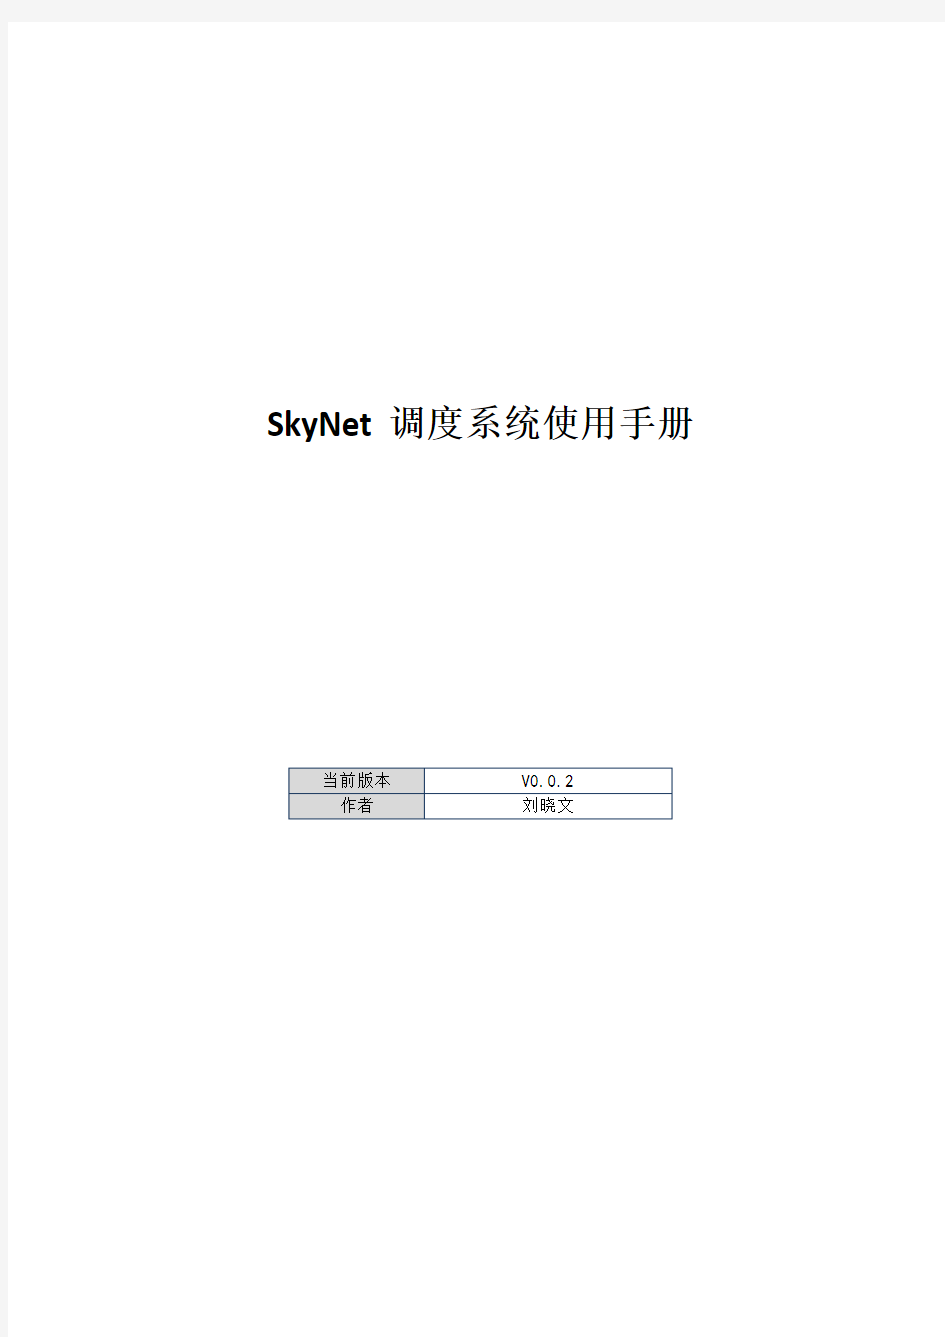 SkyNet任务调度监控系统-使用手册